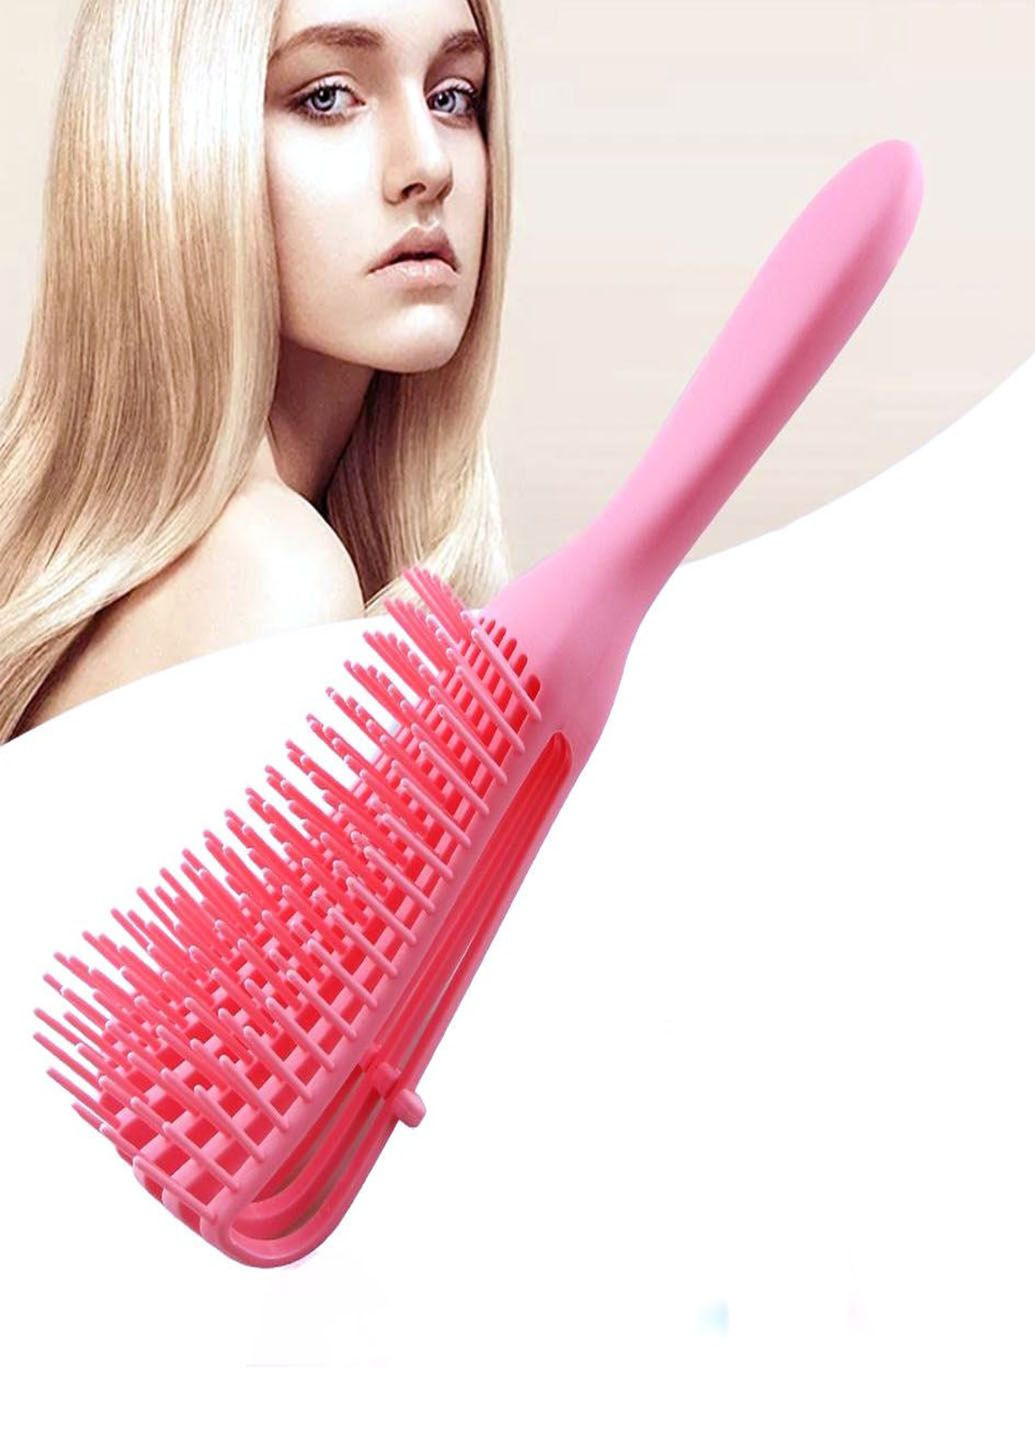 Расческа для волос Good Silicone comb для всех типов волос Idea (292013889)